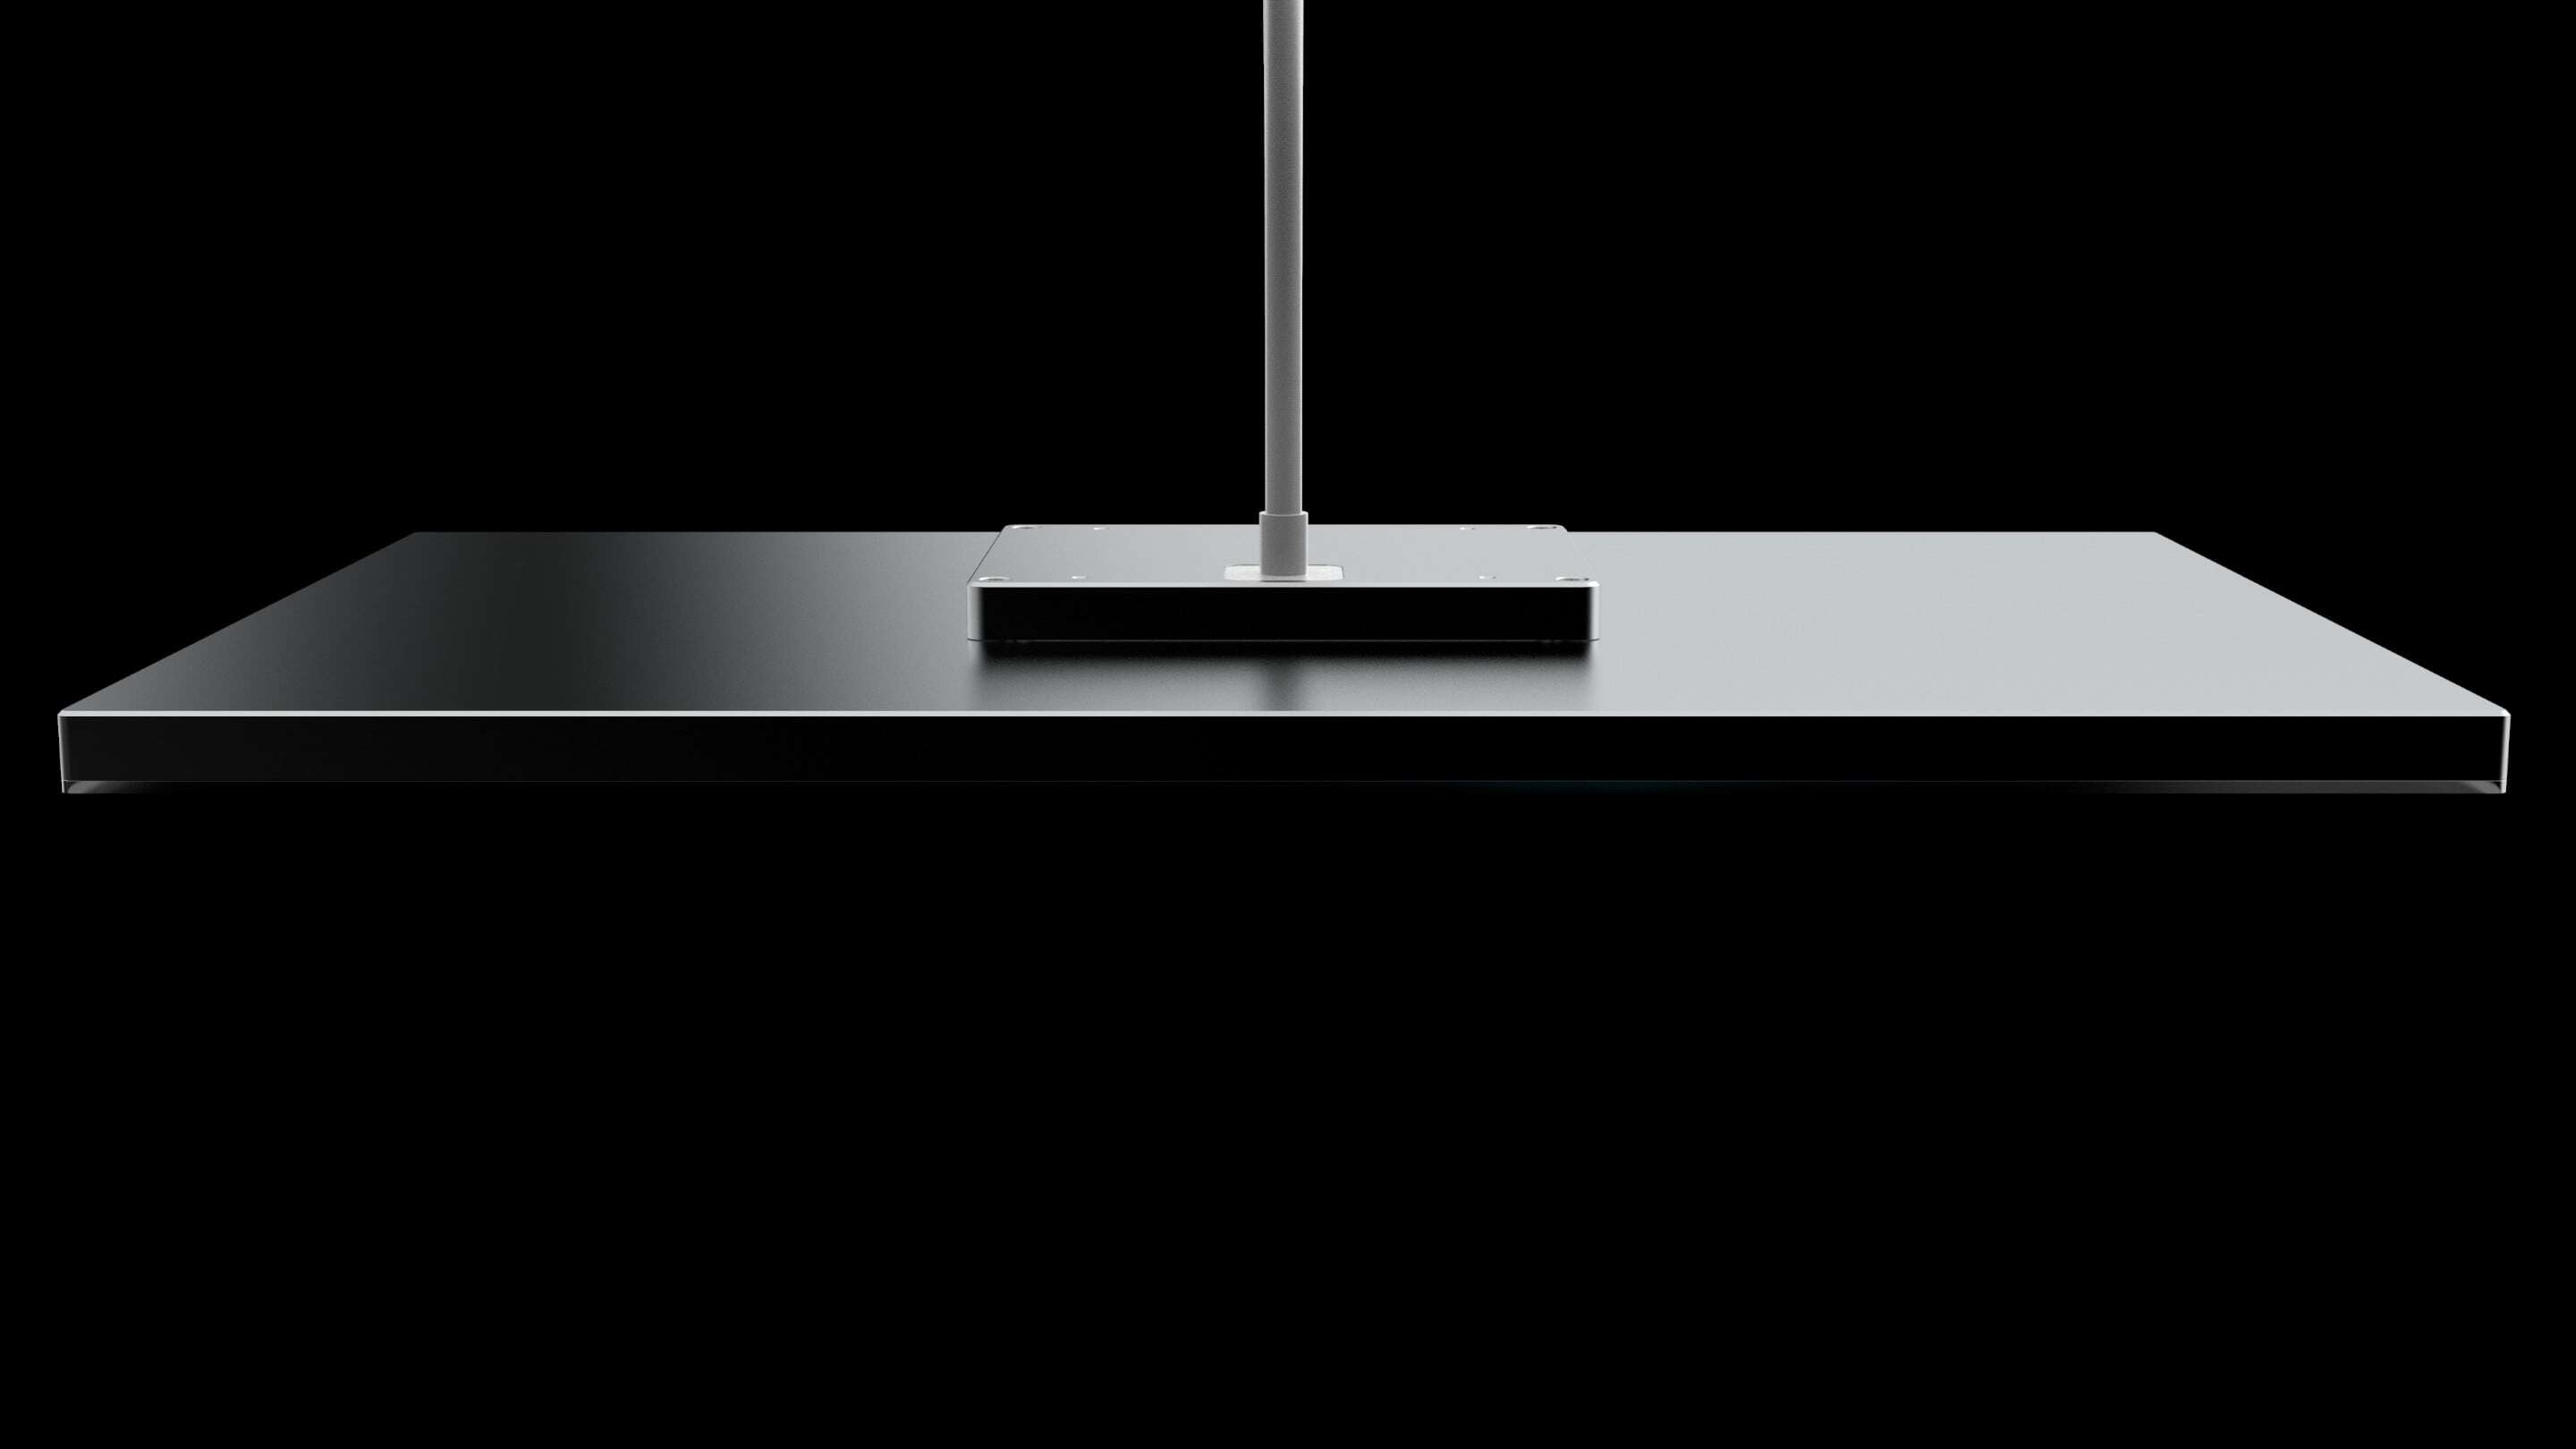 Design - Ontwerp een kabel een zwarte rechthoekige tafel met een paal